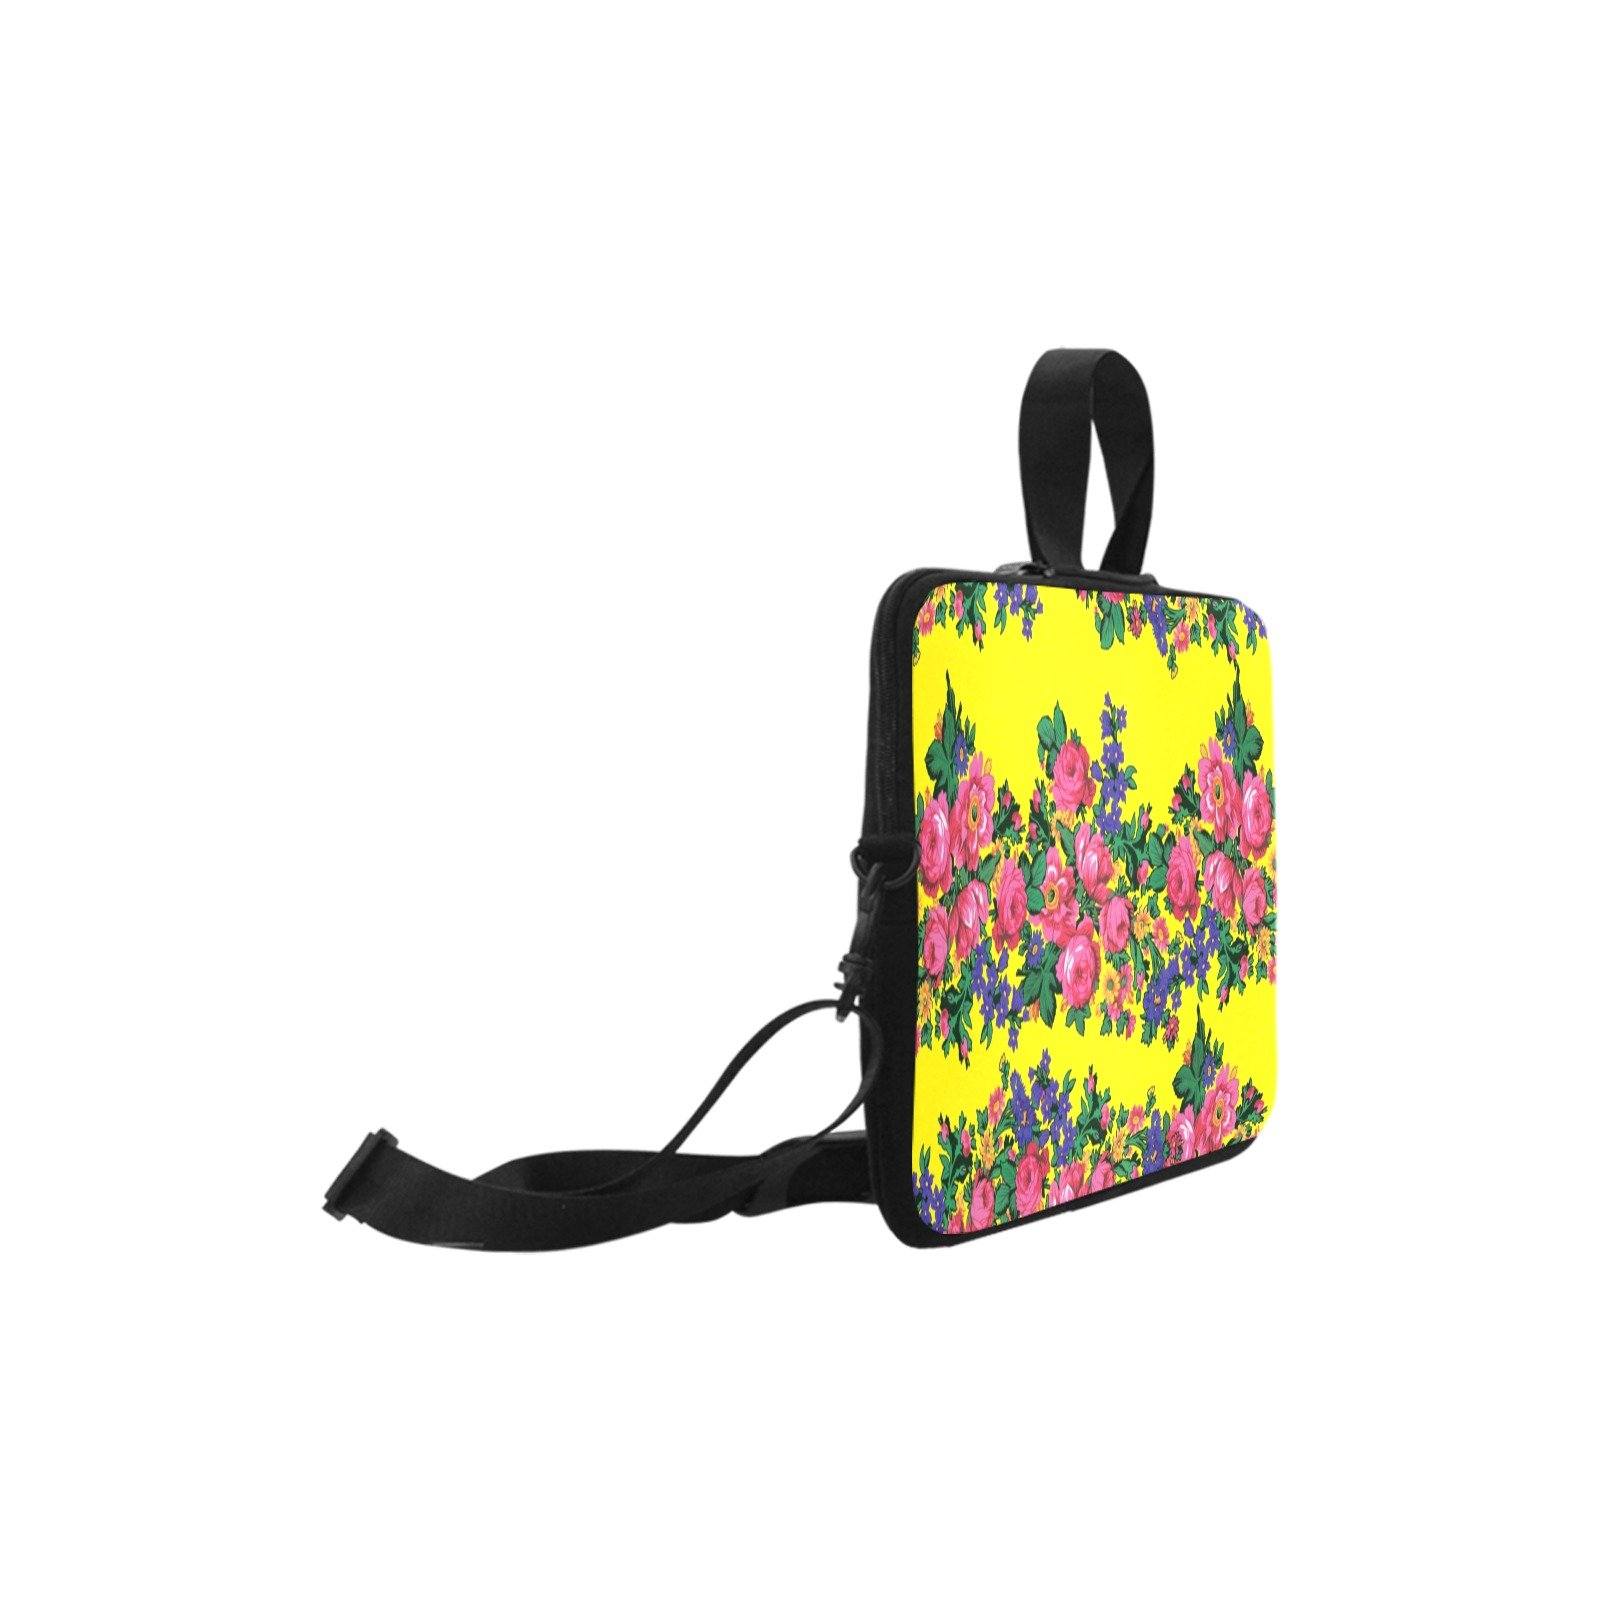 Kokum's Revenge Yellow Laptop Handbags 10" bag e-joyer 